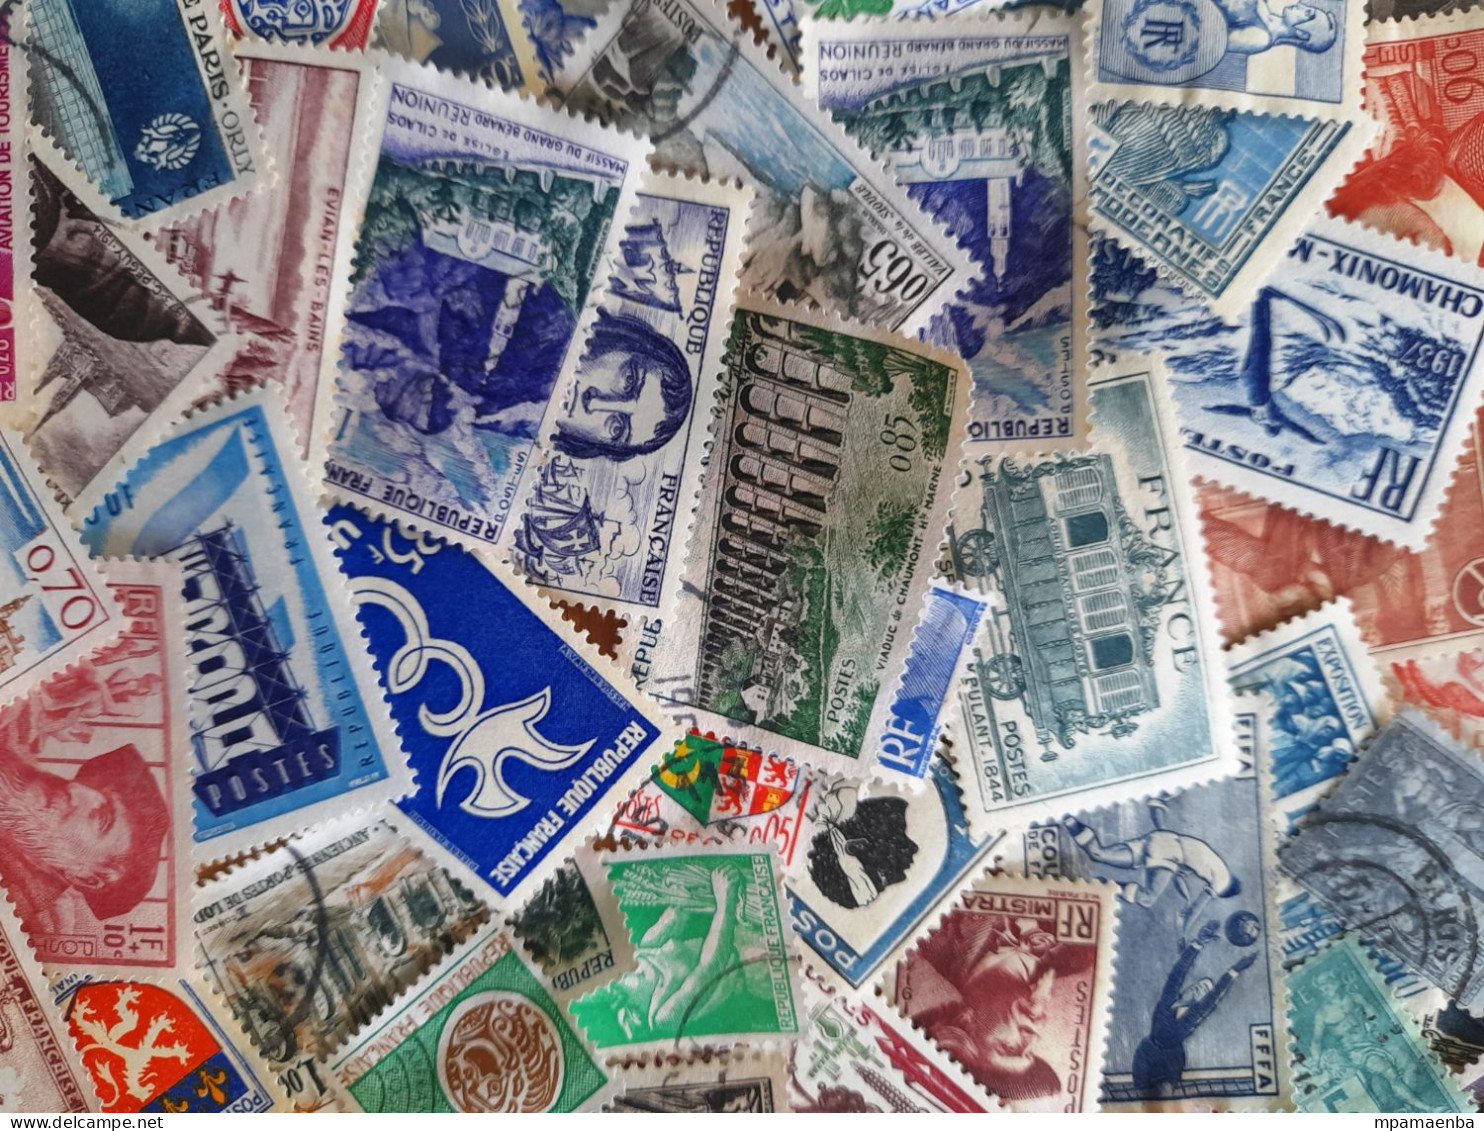 800 timbres français, oblitérés (60%), 40 % de timbres neufs (* *, * , NSG), lot très dense à dominante semi-classique.